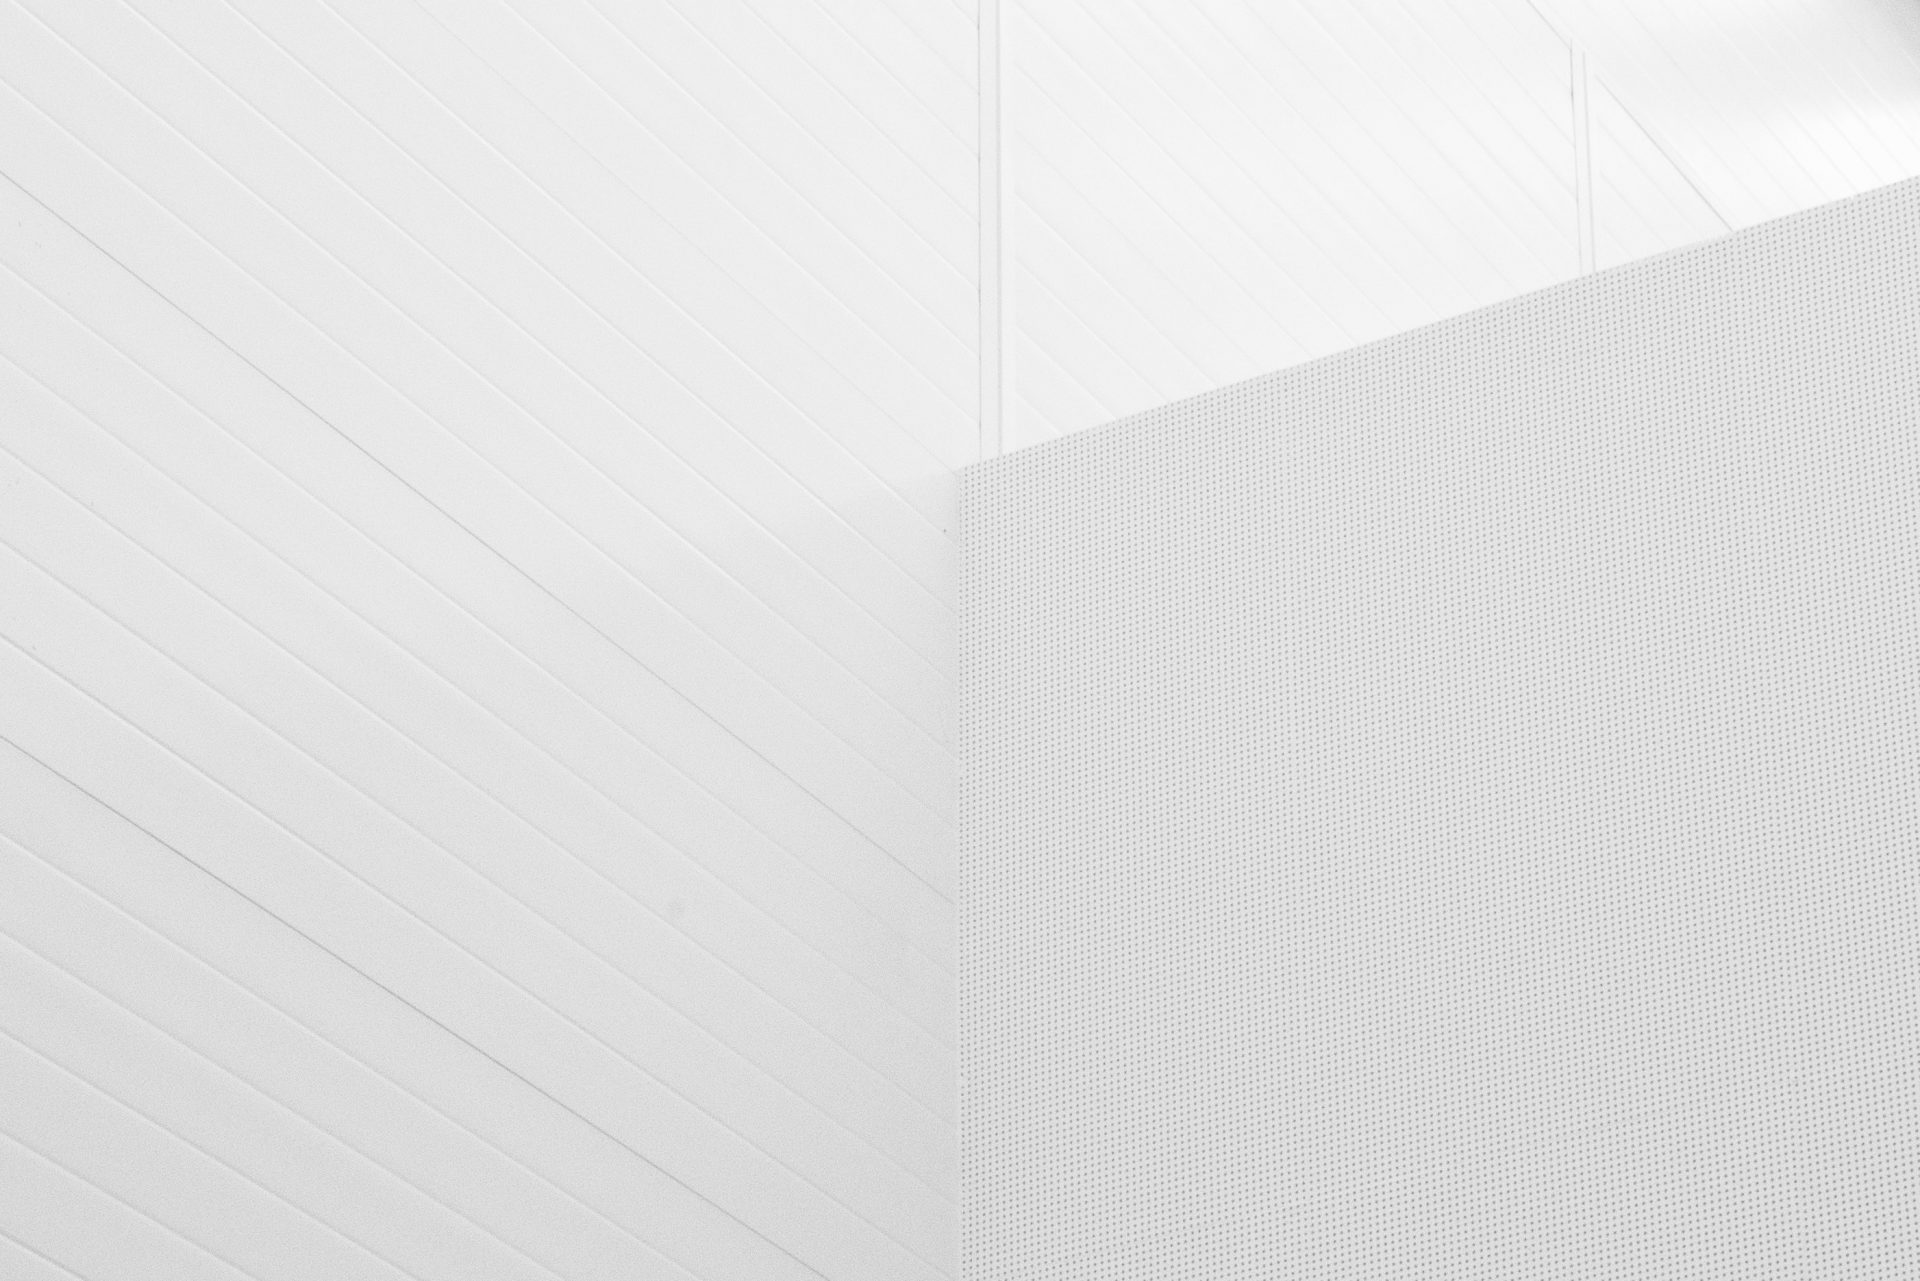 Một hình nền tường màu trắng sáng sẽ khiến cho tất cả những người xem đều cảm thấy yên tĩnh và trầm lặng. Bạn có thể tạo ra một bức tranh nghệ thuật đích thực trên nền tường trắng sạch, và dễ dàng thu hút sự chú ý của những người xem.